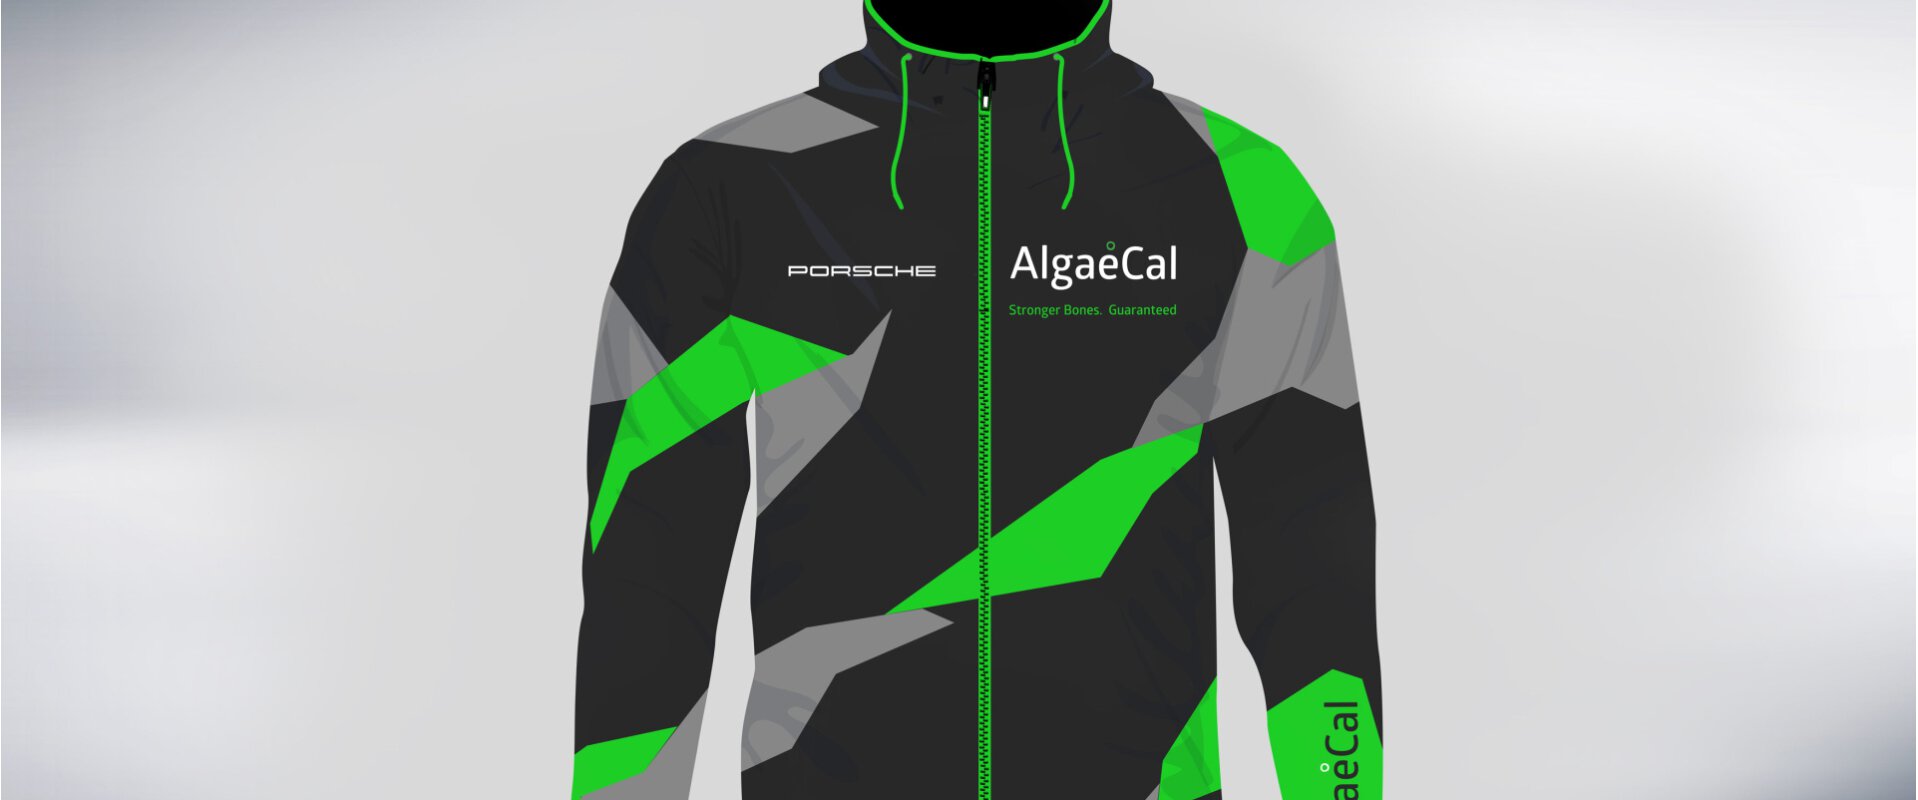 AlgaeCal #1